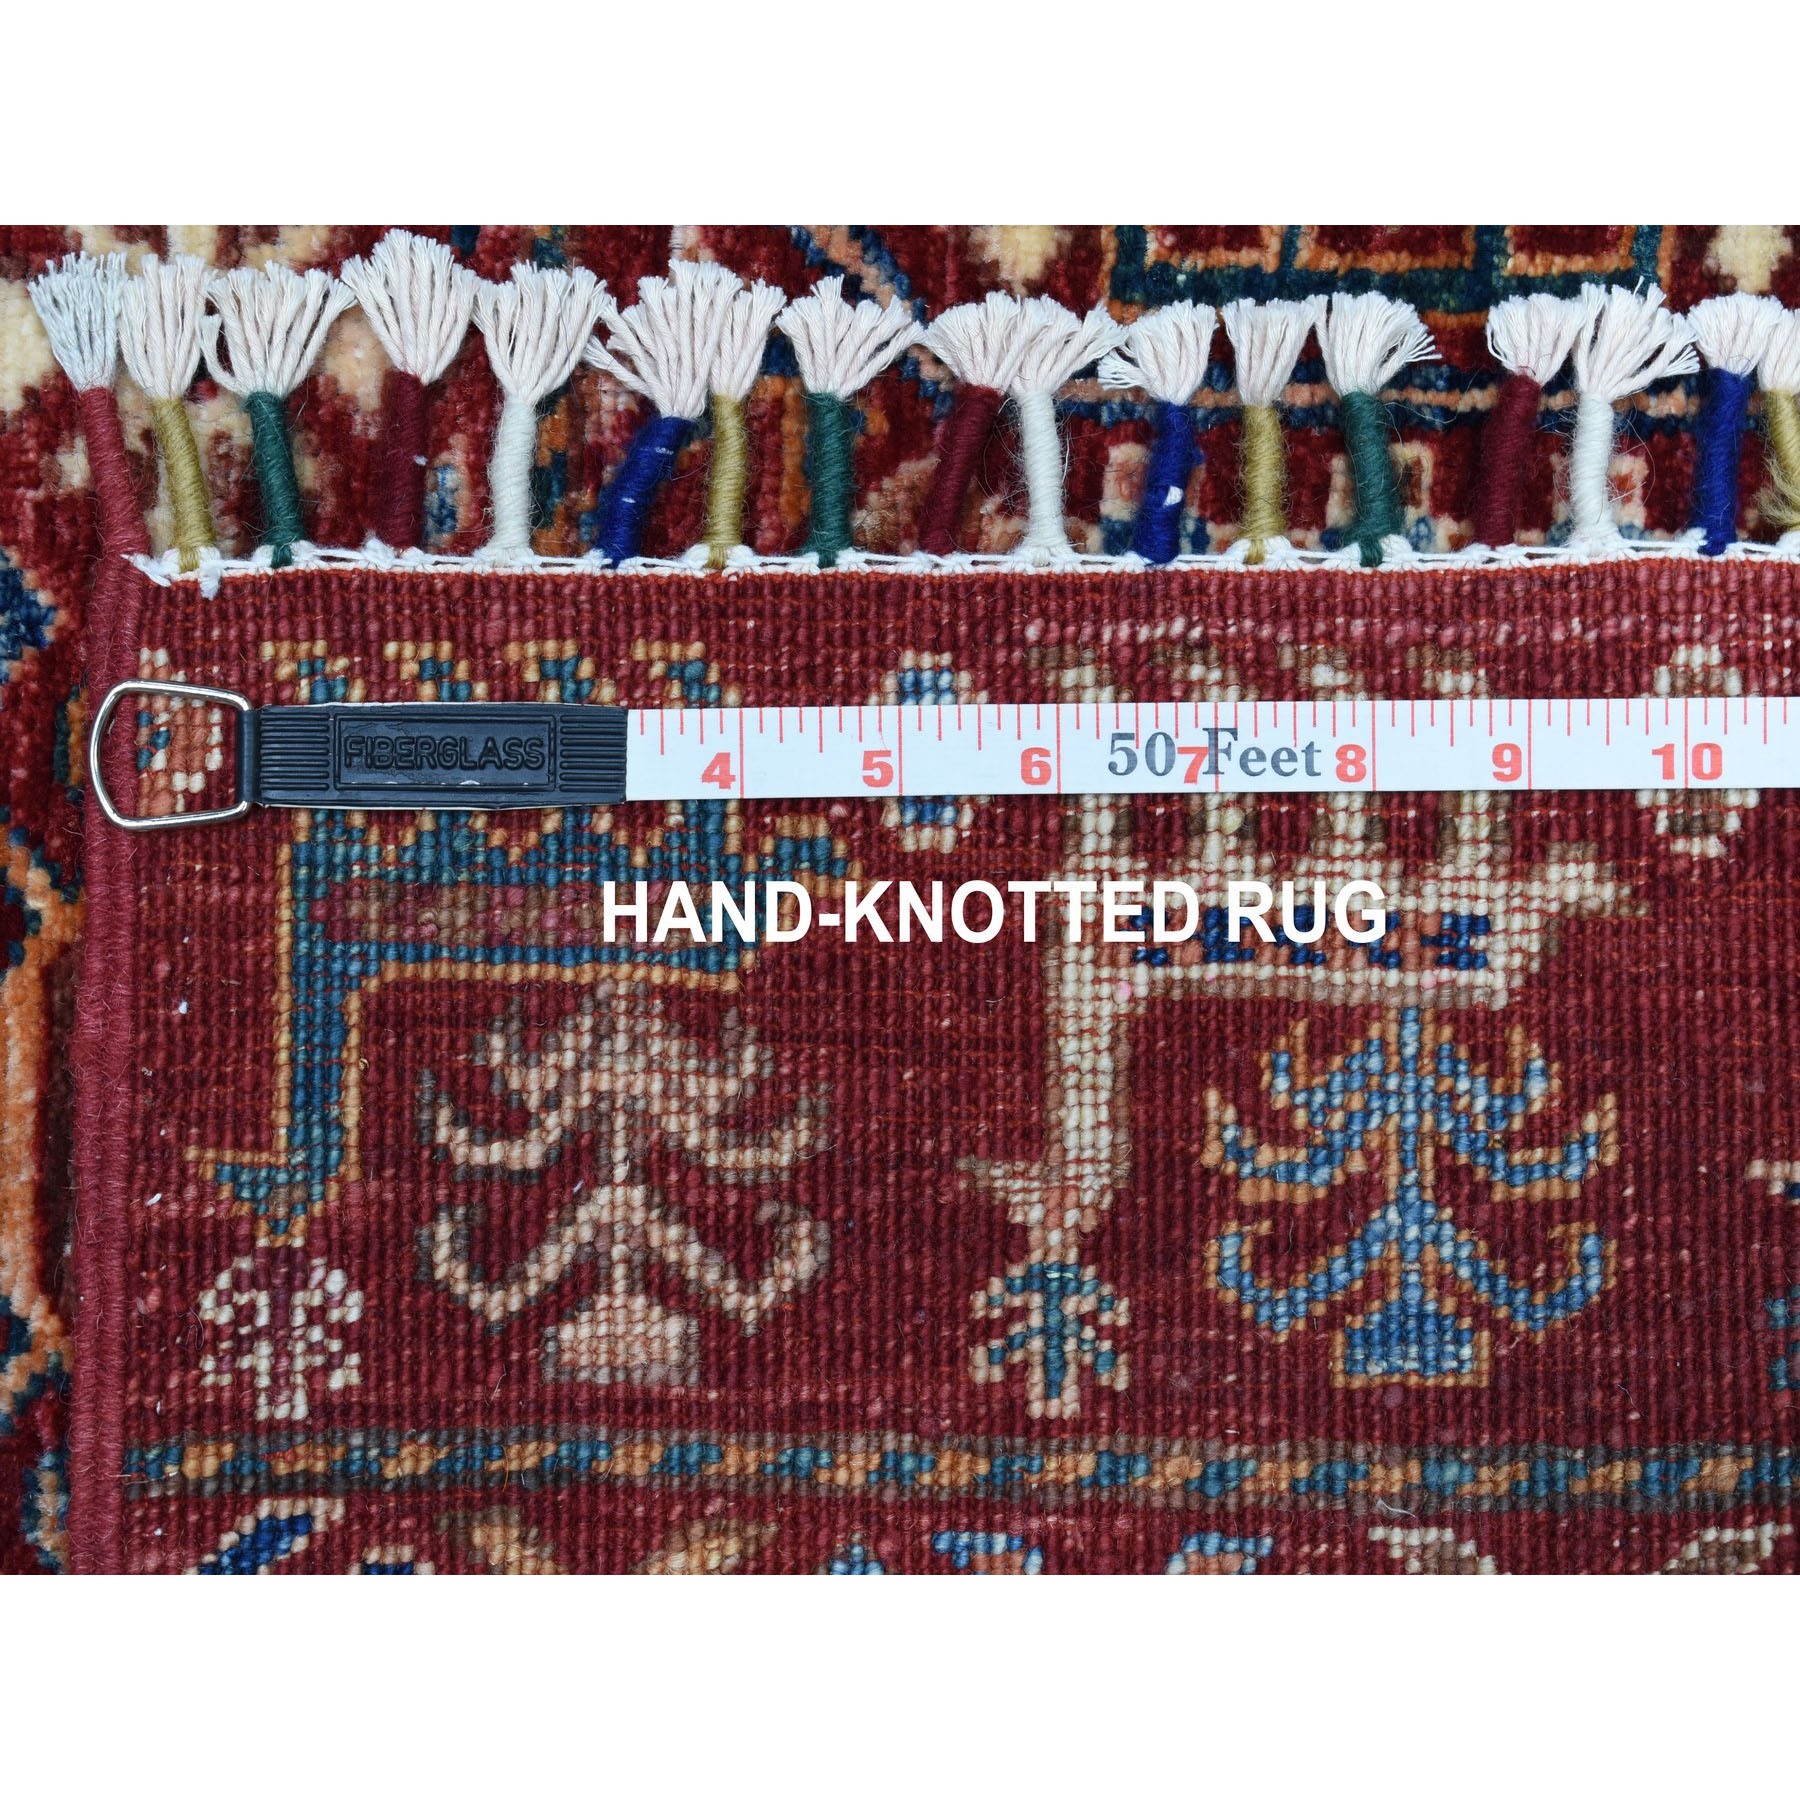 2-5 x6-4  Khorjin Design Runner Red Super Kazak Pictorial Hand Knotted 100% Wool Oriental Rug 